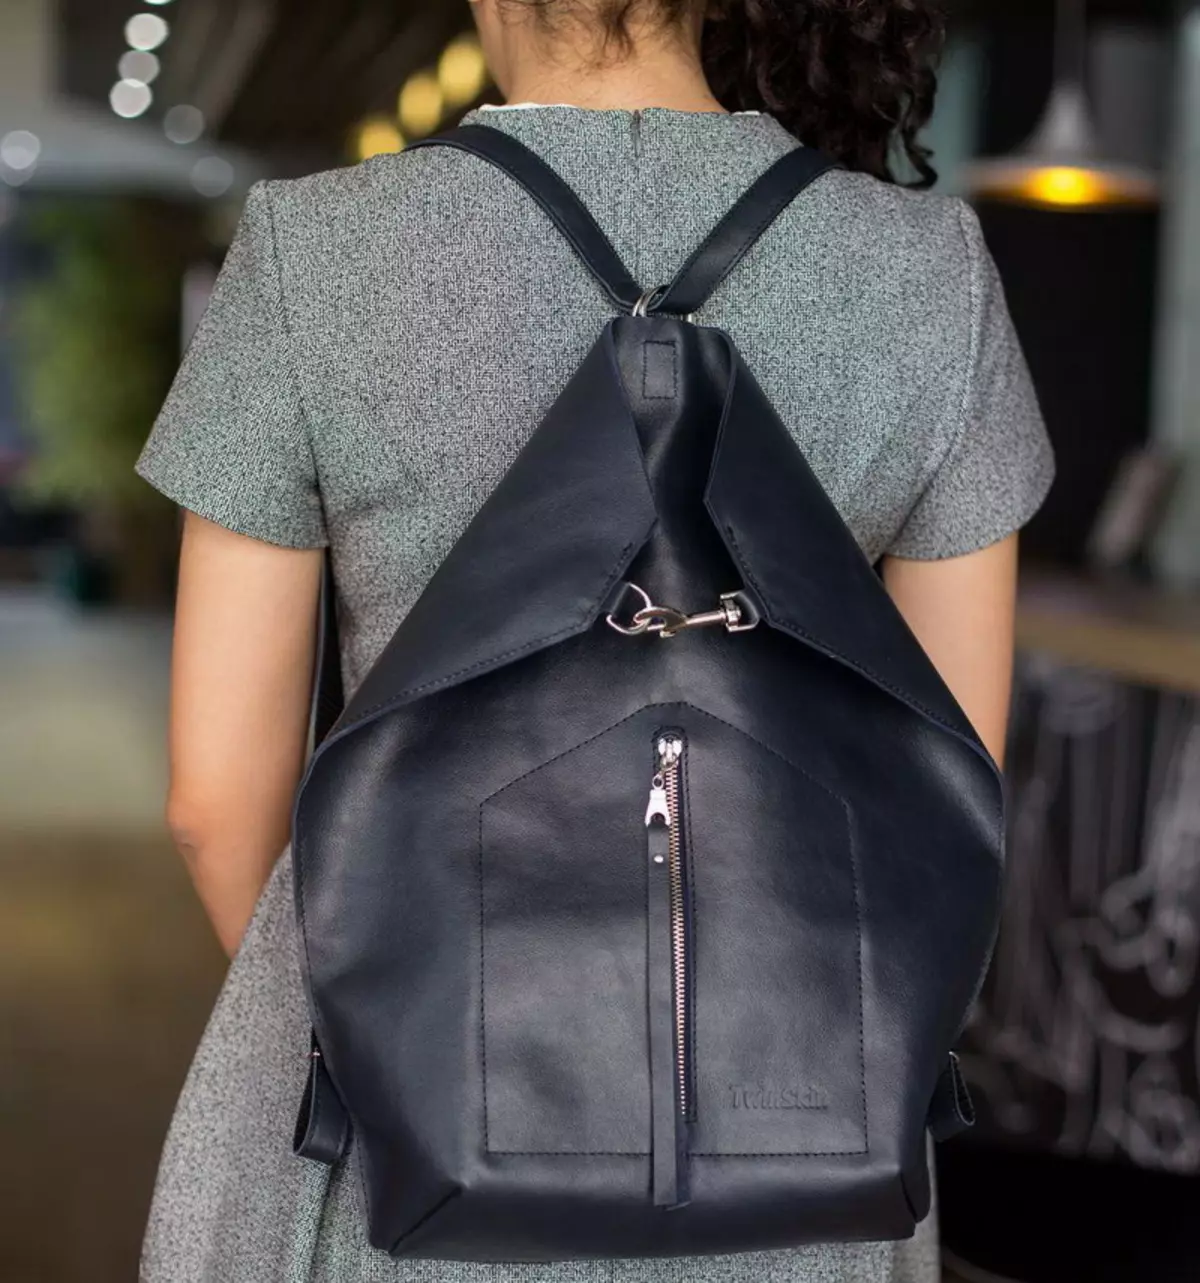 Transformers Backpacks: Kvinders læder rygsæk tasker med to håndtag og øko-træ, Burgund og sort, Urban og Road, andre modeller 2589_23